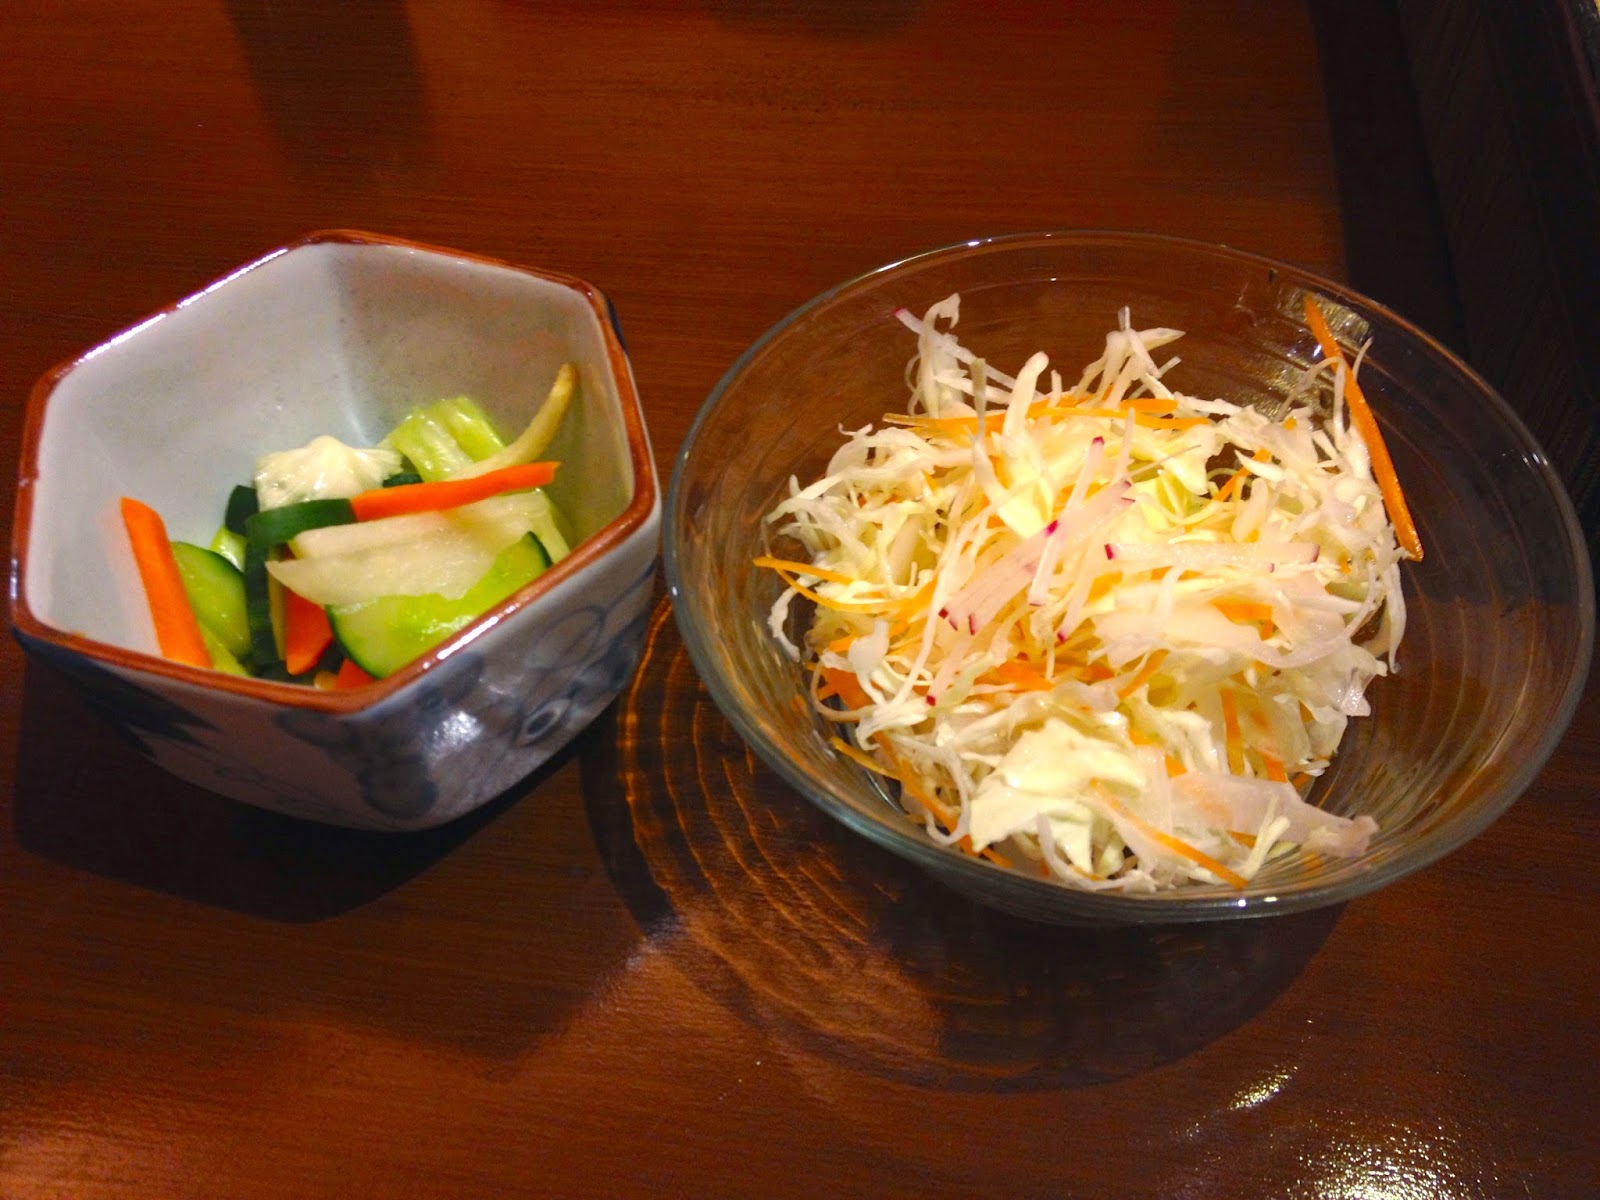 cabbage and pickled vegetables for Butadon set